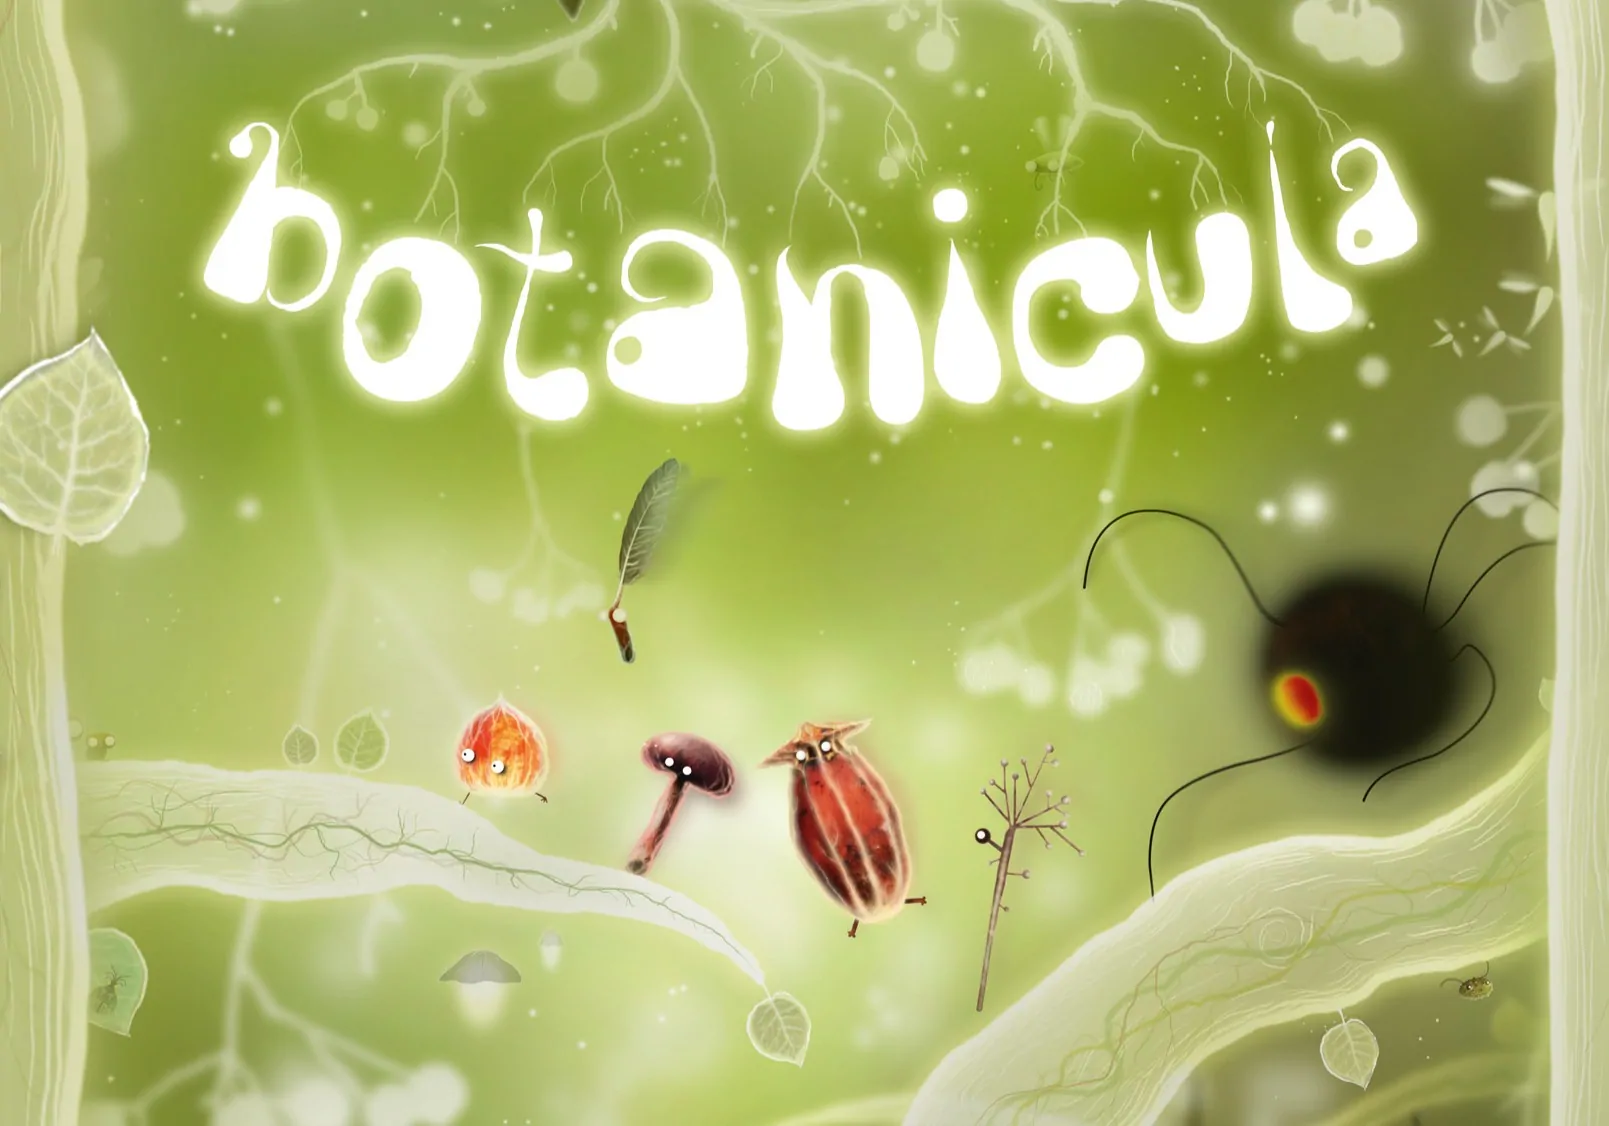 botanicula-android-apk-download-droidapk-org